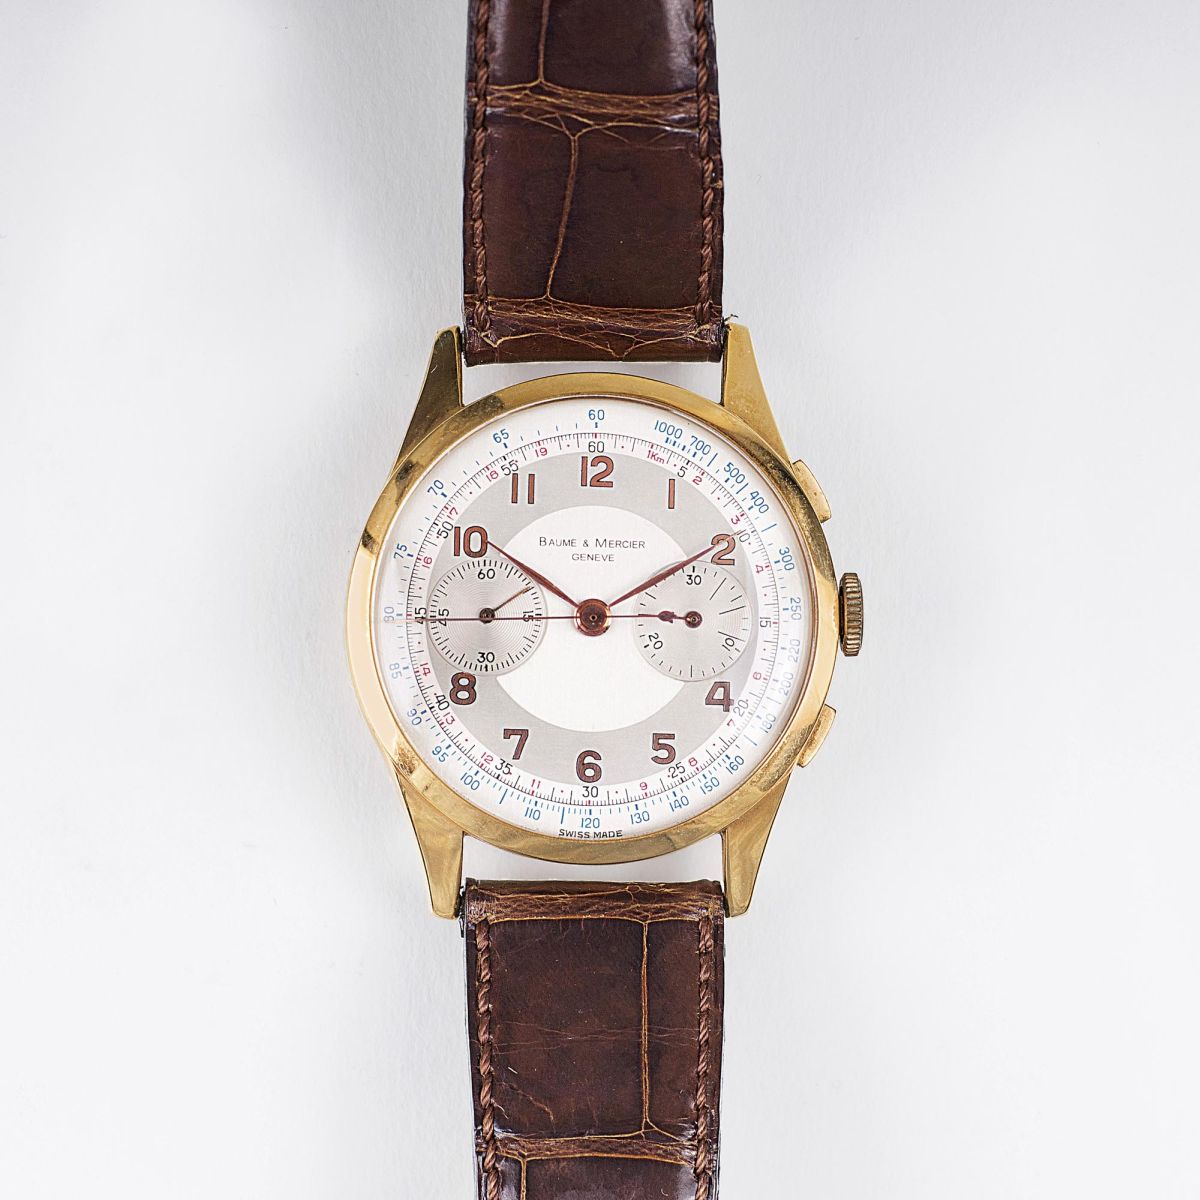 Vintage Herren-Armbanduhr Chronograph - Telemeter